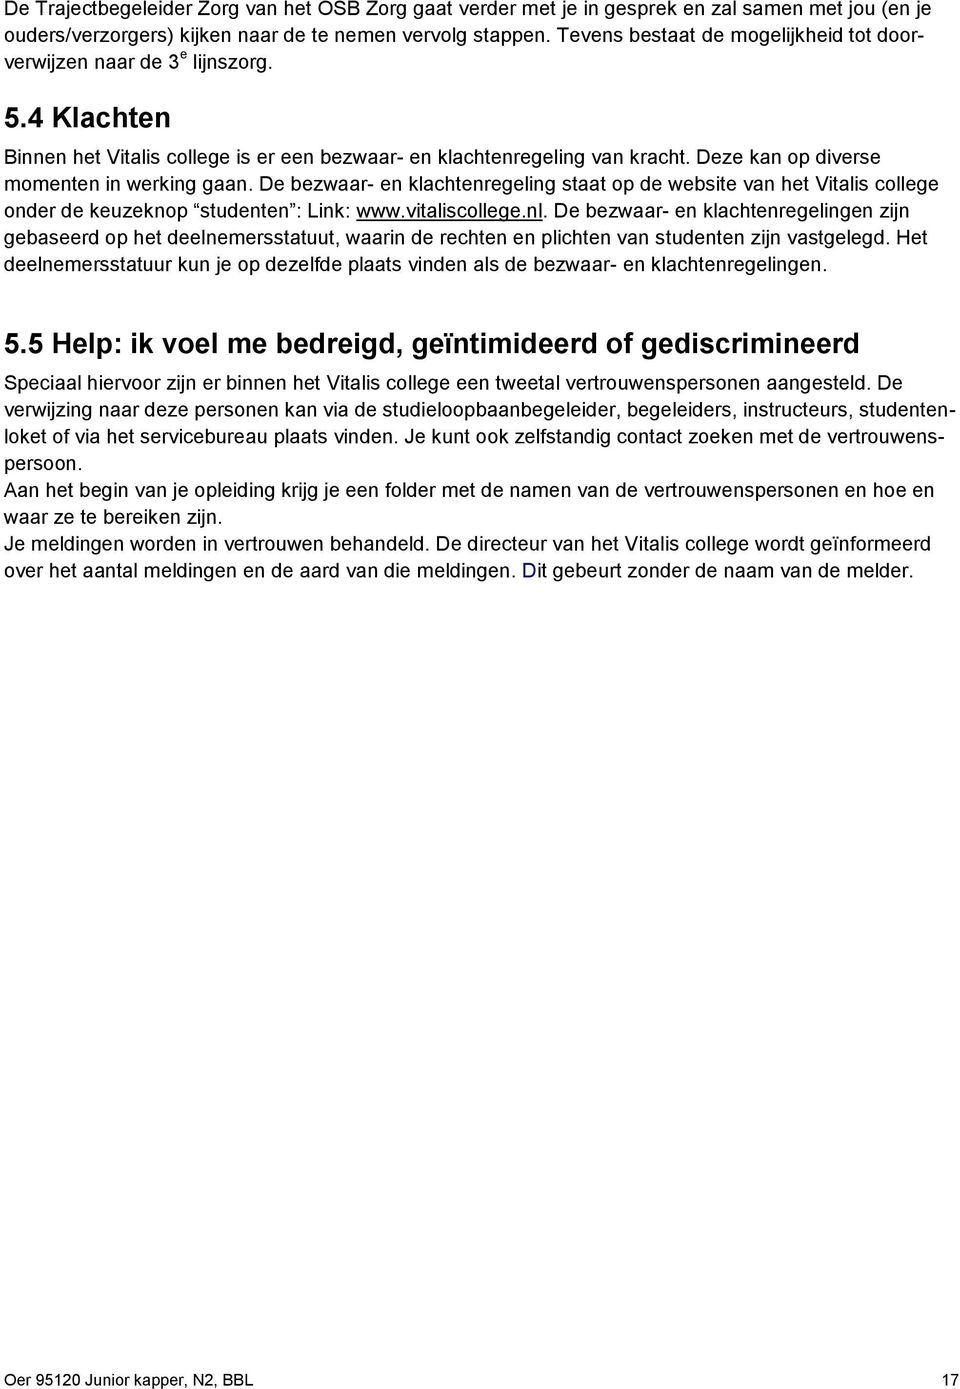 Deze kan op diverse momenten in werking gaan. De bezwaar- en klachtenregeling staat op de website van het Vitalis college onder de keuzeknop studenten : Link: www.vitaliscollege.nl.